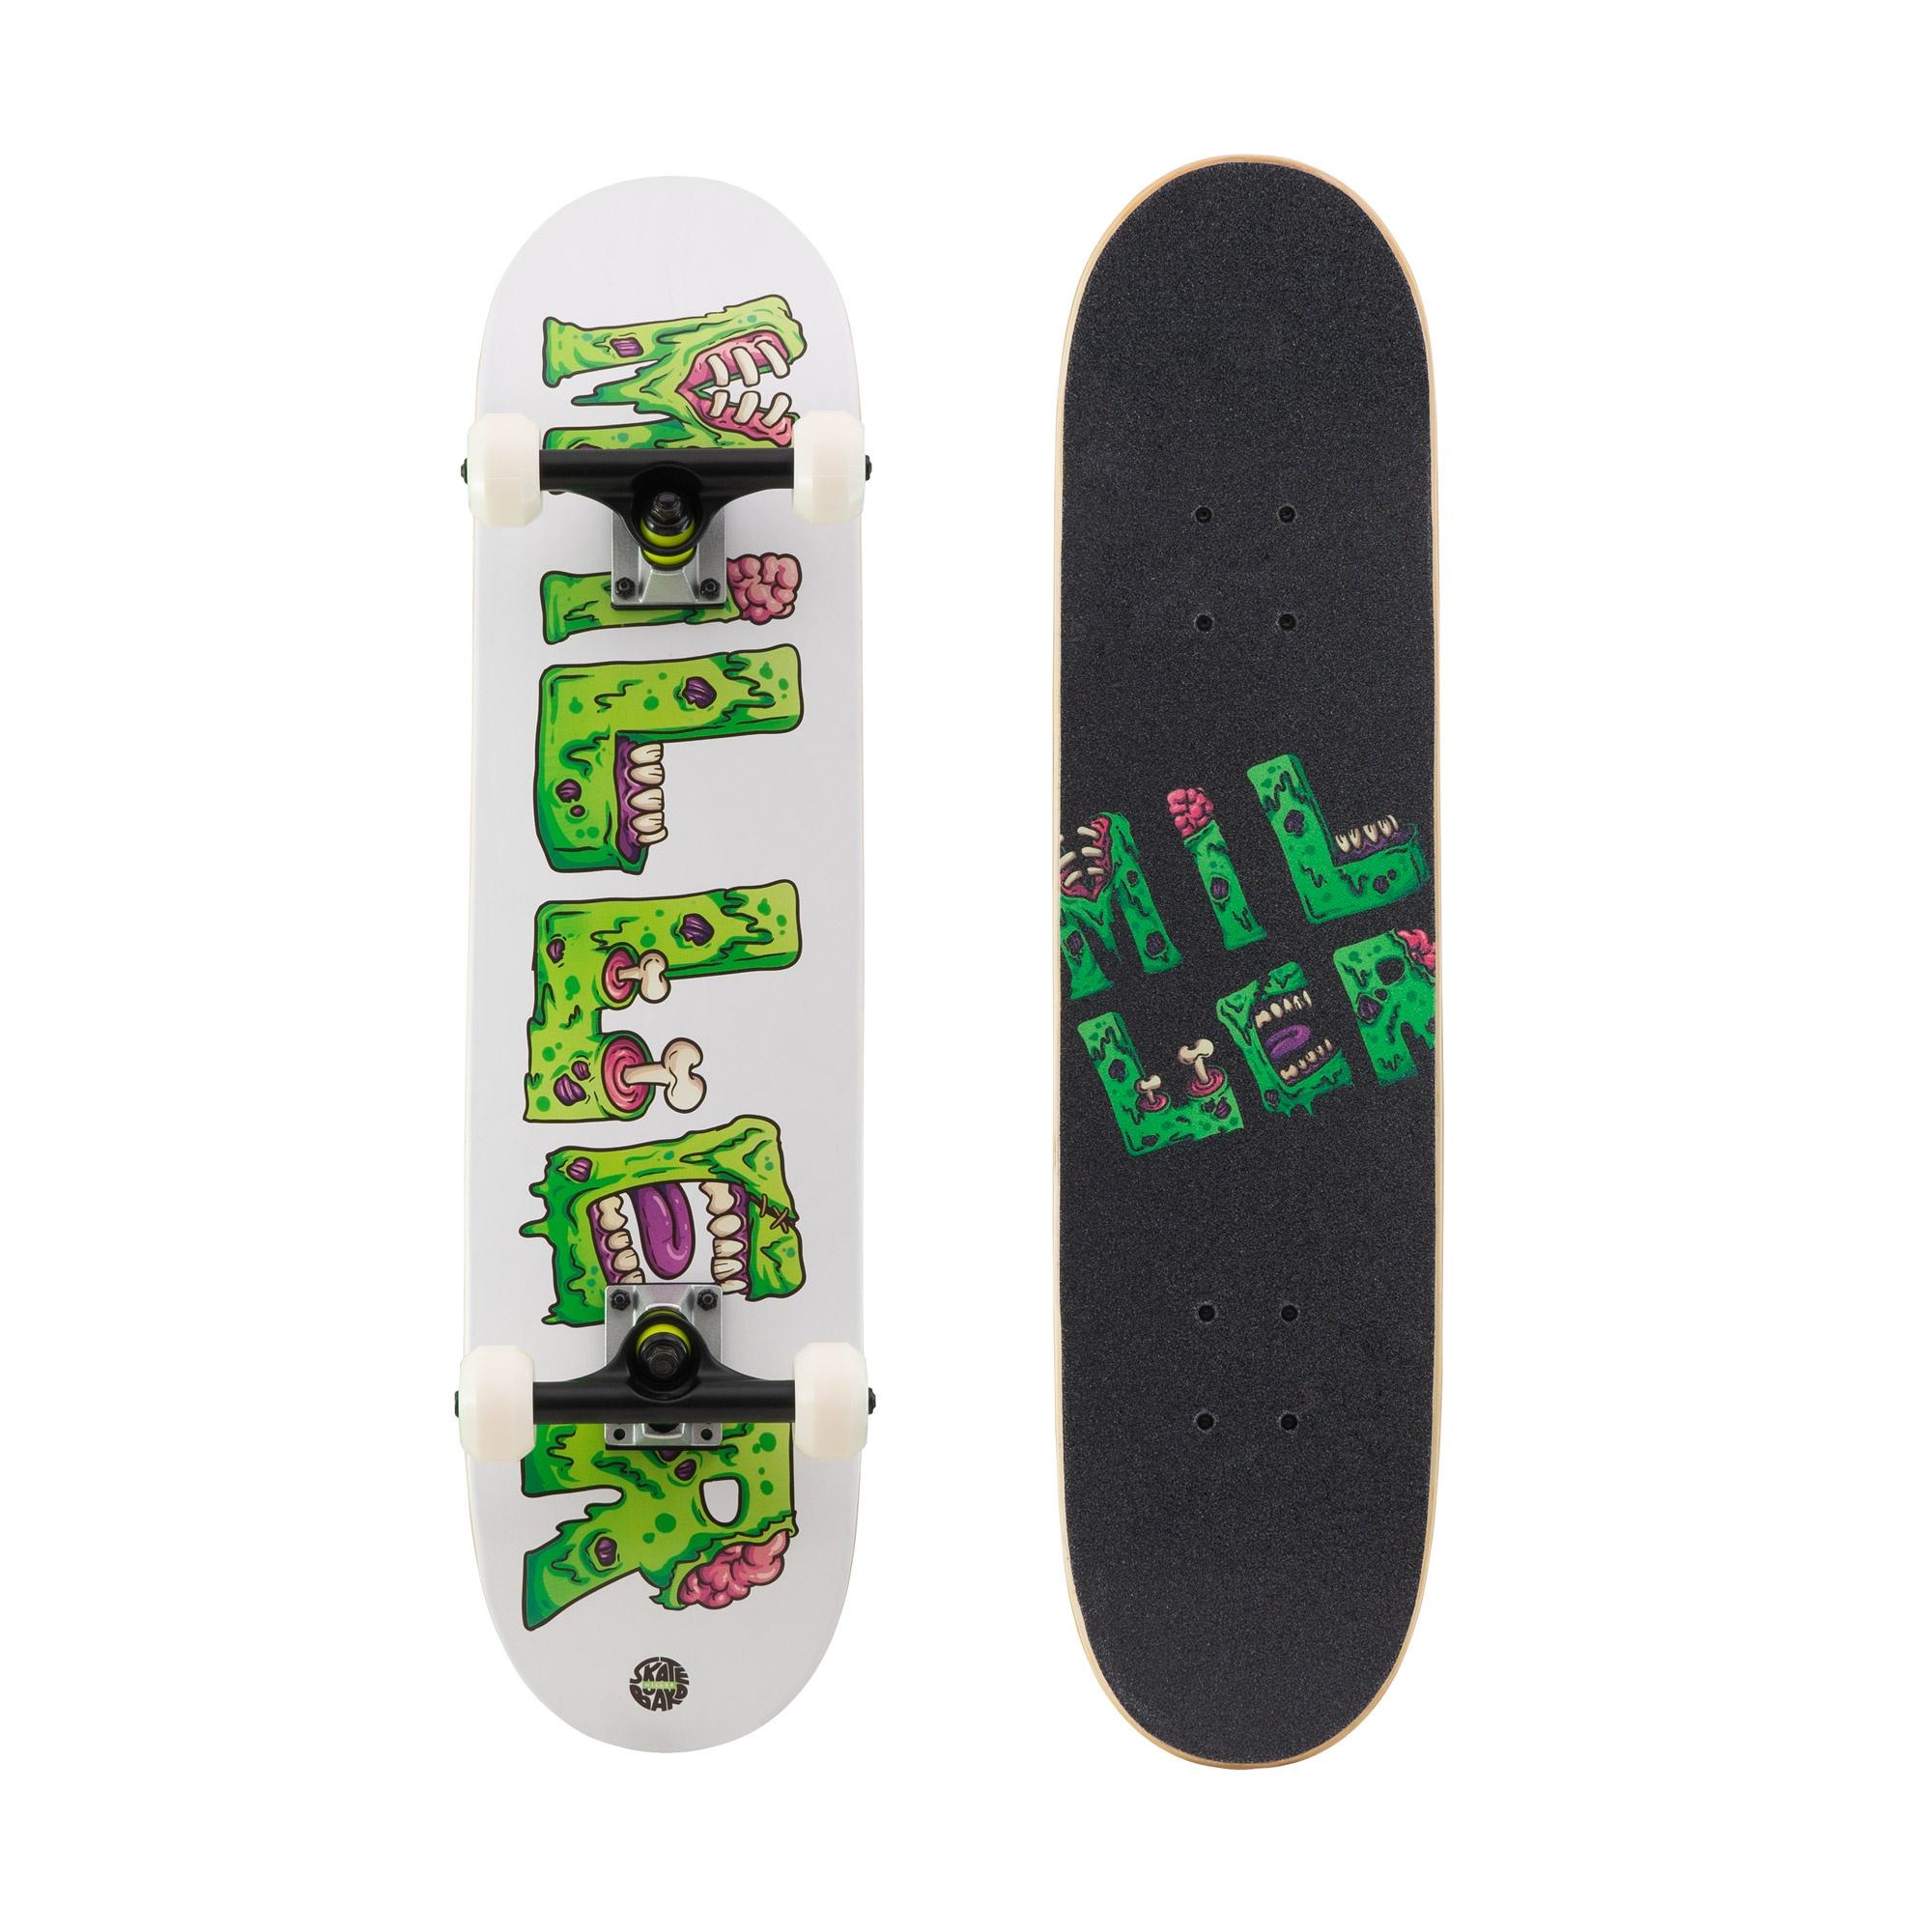 Skateboard Completo Miller Monster Arce 30,5"x7,5" Abec7 Ruedas Creek Shr 53mm - blanco-verde - 